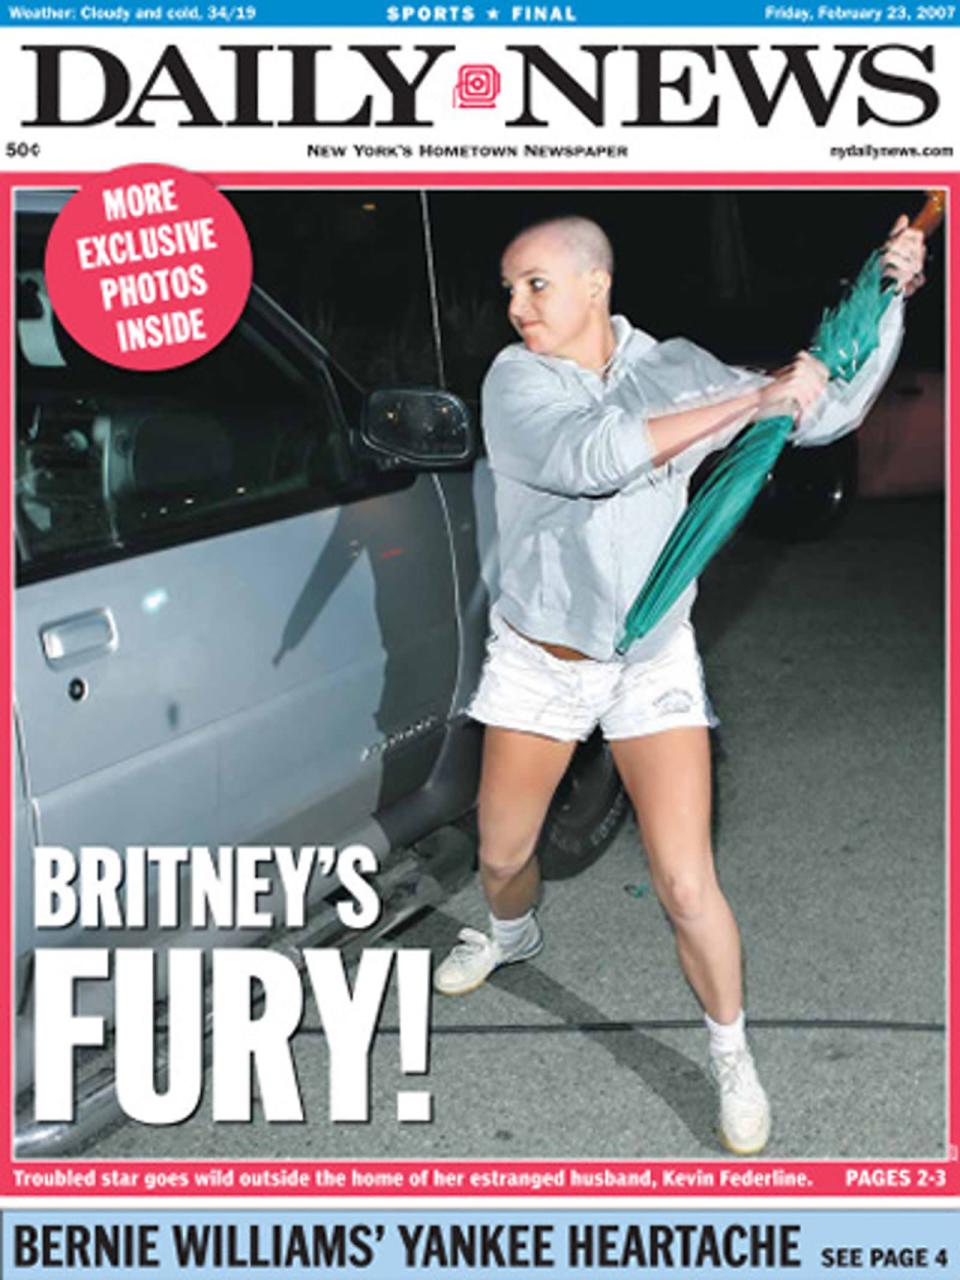 "Britney's fury", titelte die New Yorker "Daily News"-Zeitung im Februar 2007 - "Britney in Rage". Spears hatte zu diesem Zeitpunkt für alle Welt sichtbar die Kontrolle über ihr Leben verloren. Sie ließ sich den Kopf kahl rasieren, erlaubte sich öffentliche Ausraster und machte Schlagzeilen mit einer abgebrochenen Sucht-Therapie. In den Boulevardmedien gab es damals kein größeres Thema. (Bild: 2014/Daily News, L.P. (New York)/New York Daily News/Getty Images)